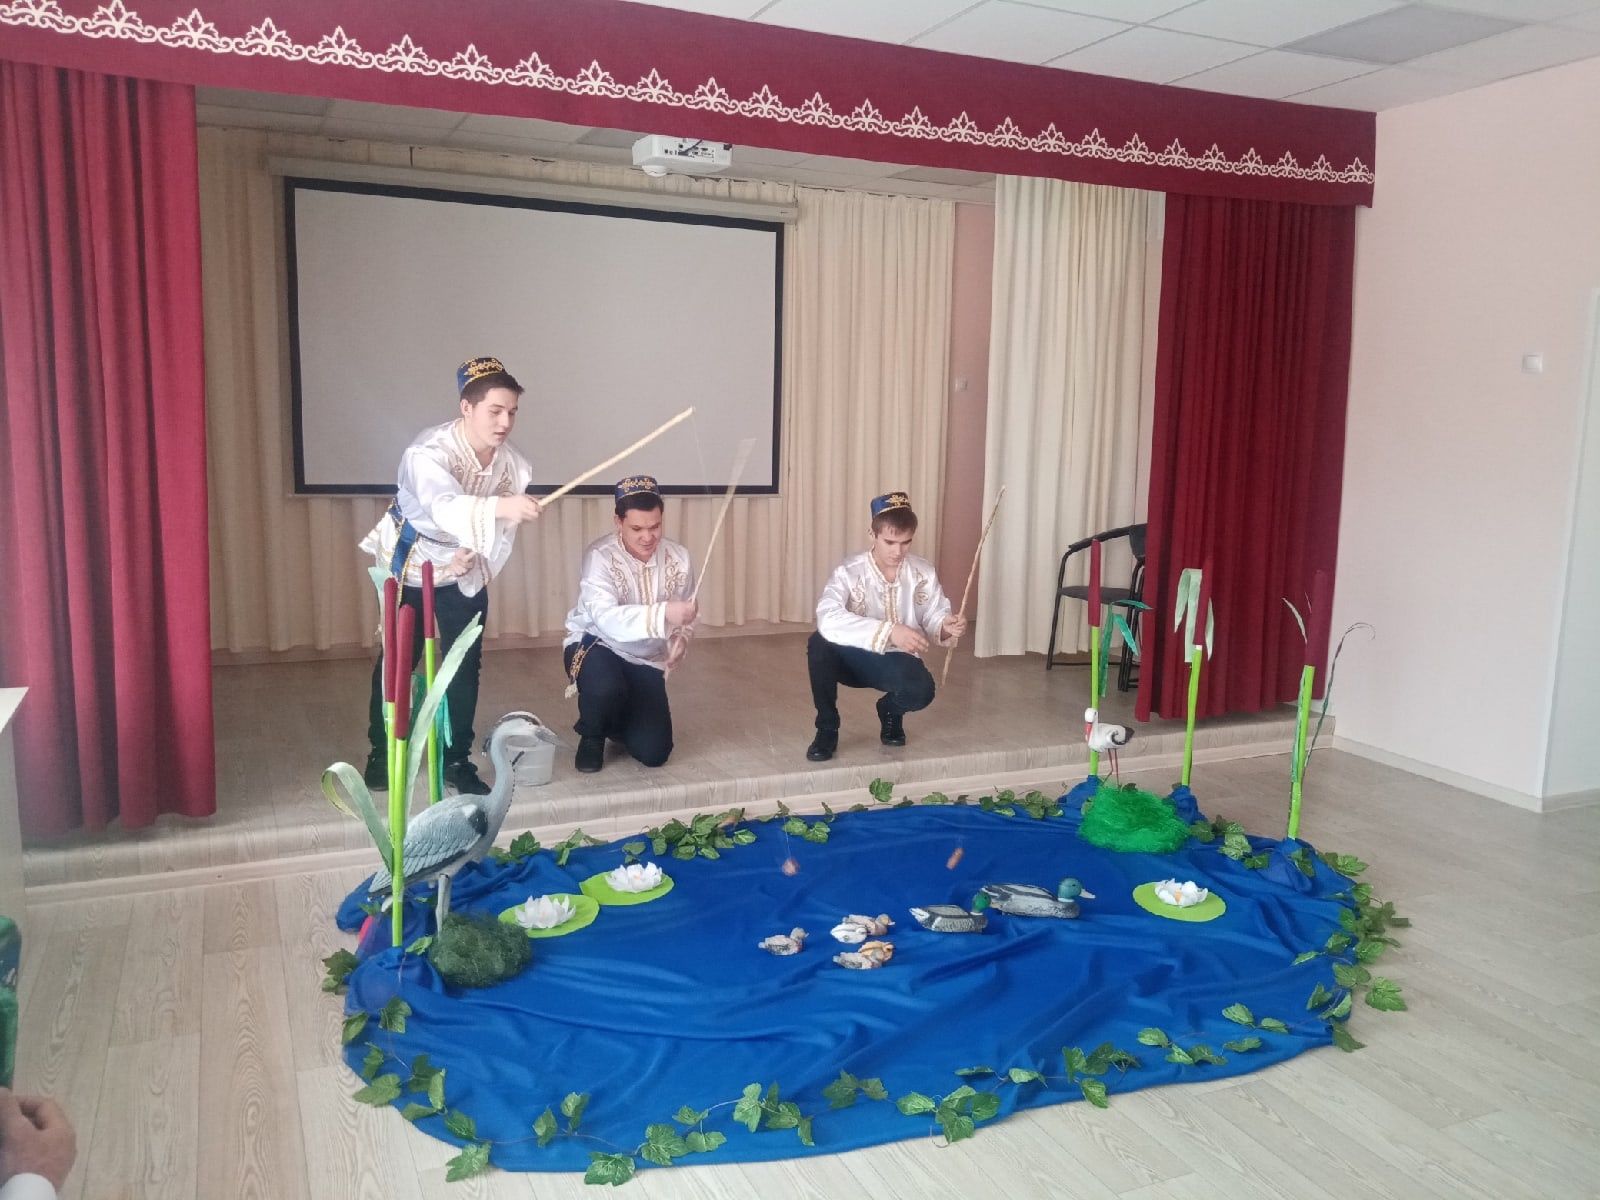 В Каразерикской школе состоялся учительский семинар